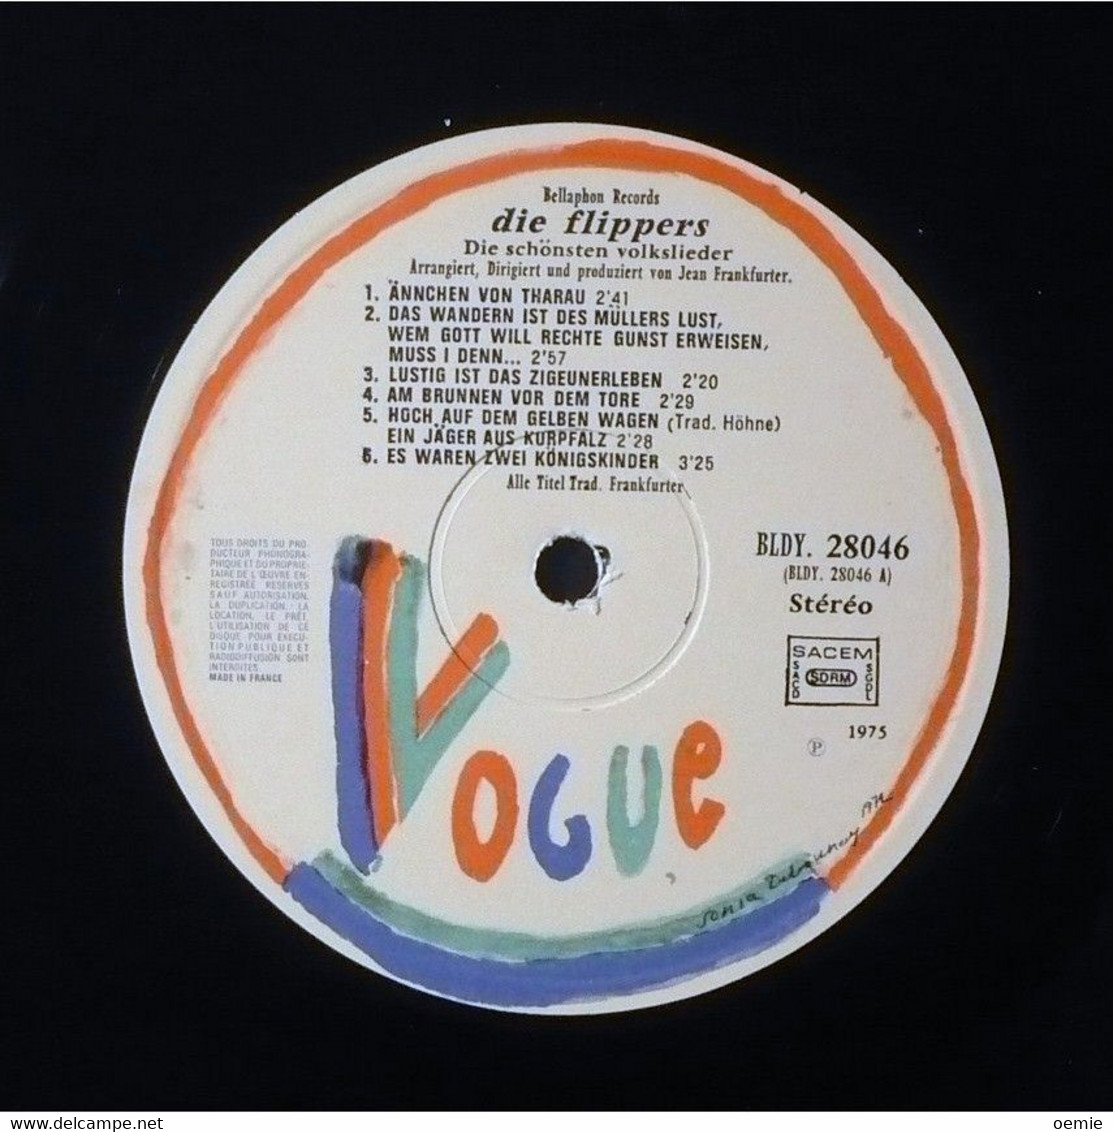 DIE FLIPPERS  / DIE SCHONSTEN VOLKSLIEDER   PRESSAGE VOGUE  28046  FRANCE - Other - German Music